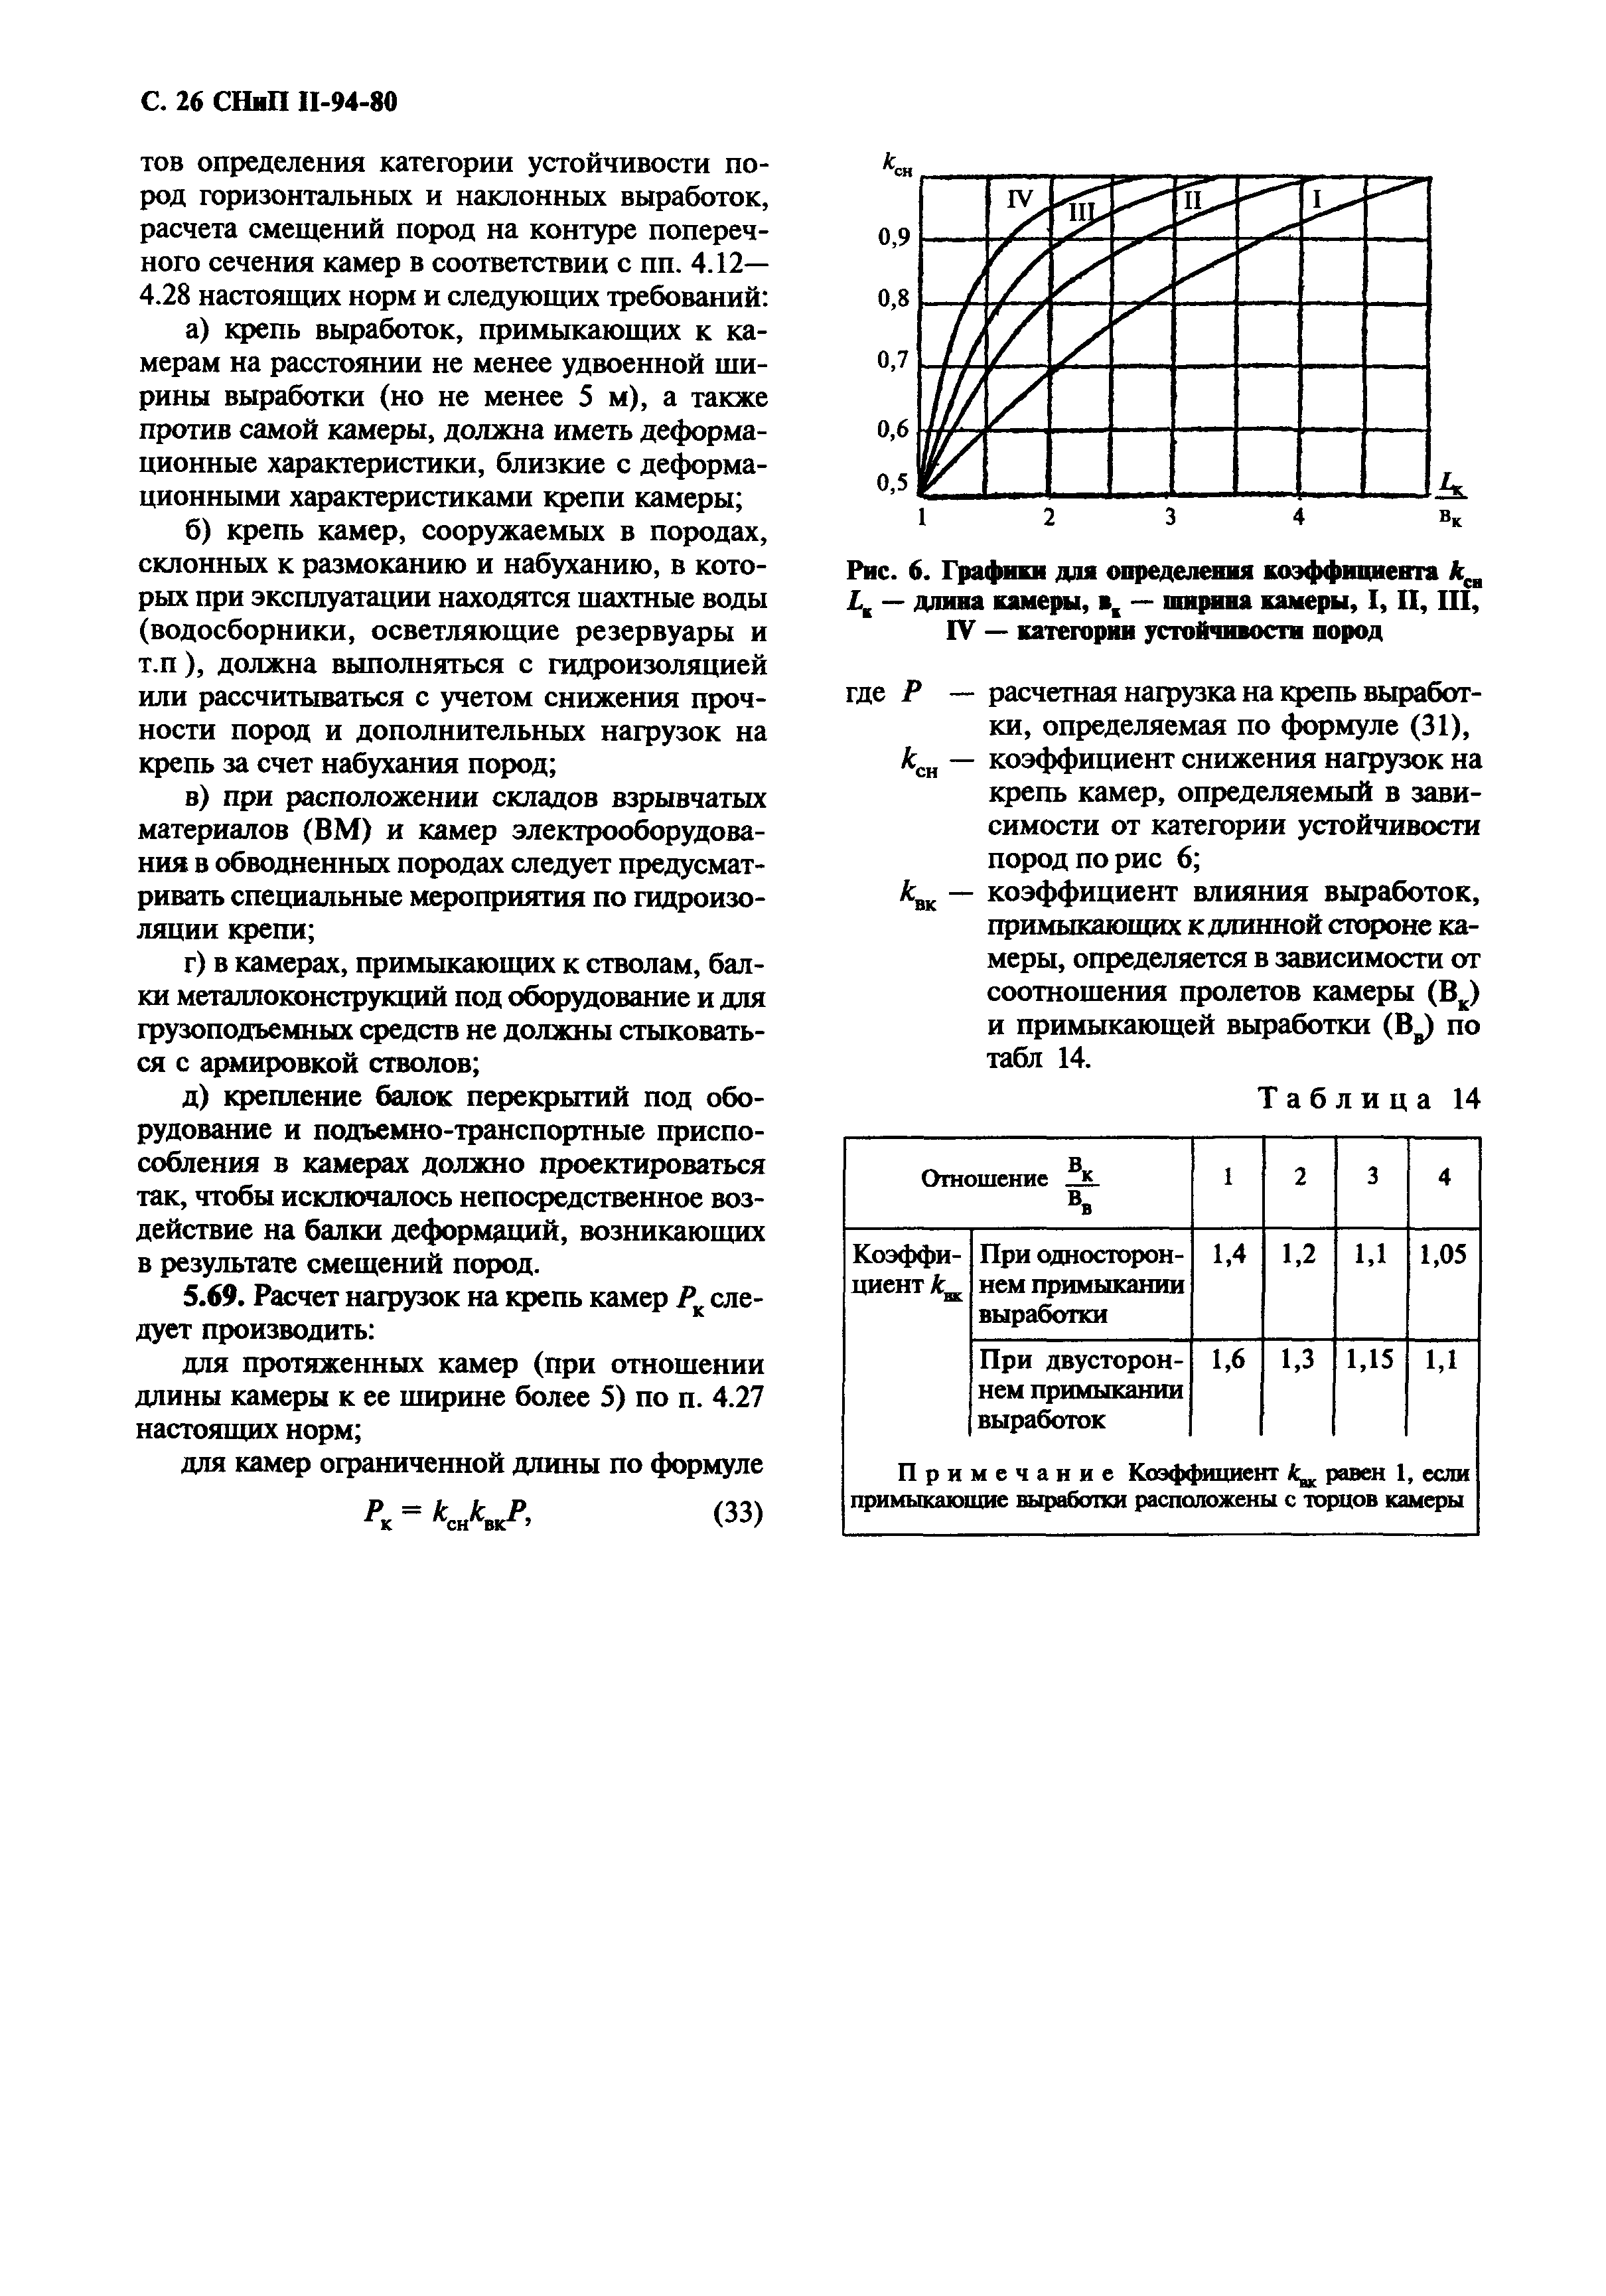 СНиП II-94-80